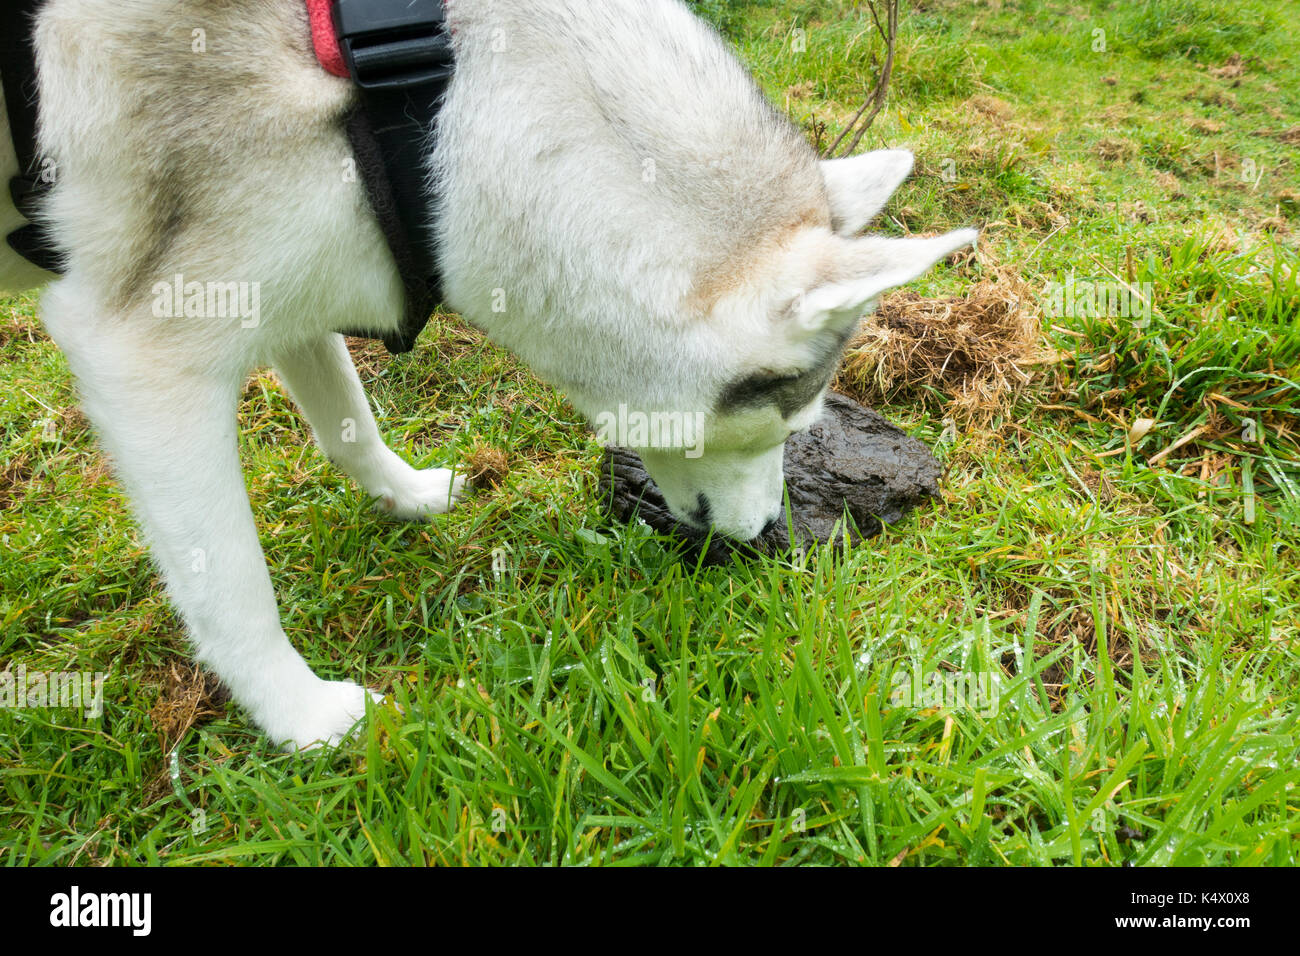 dog eating horse poop